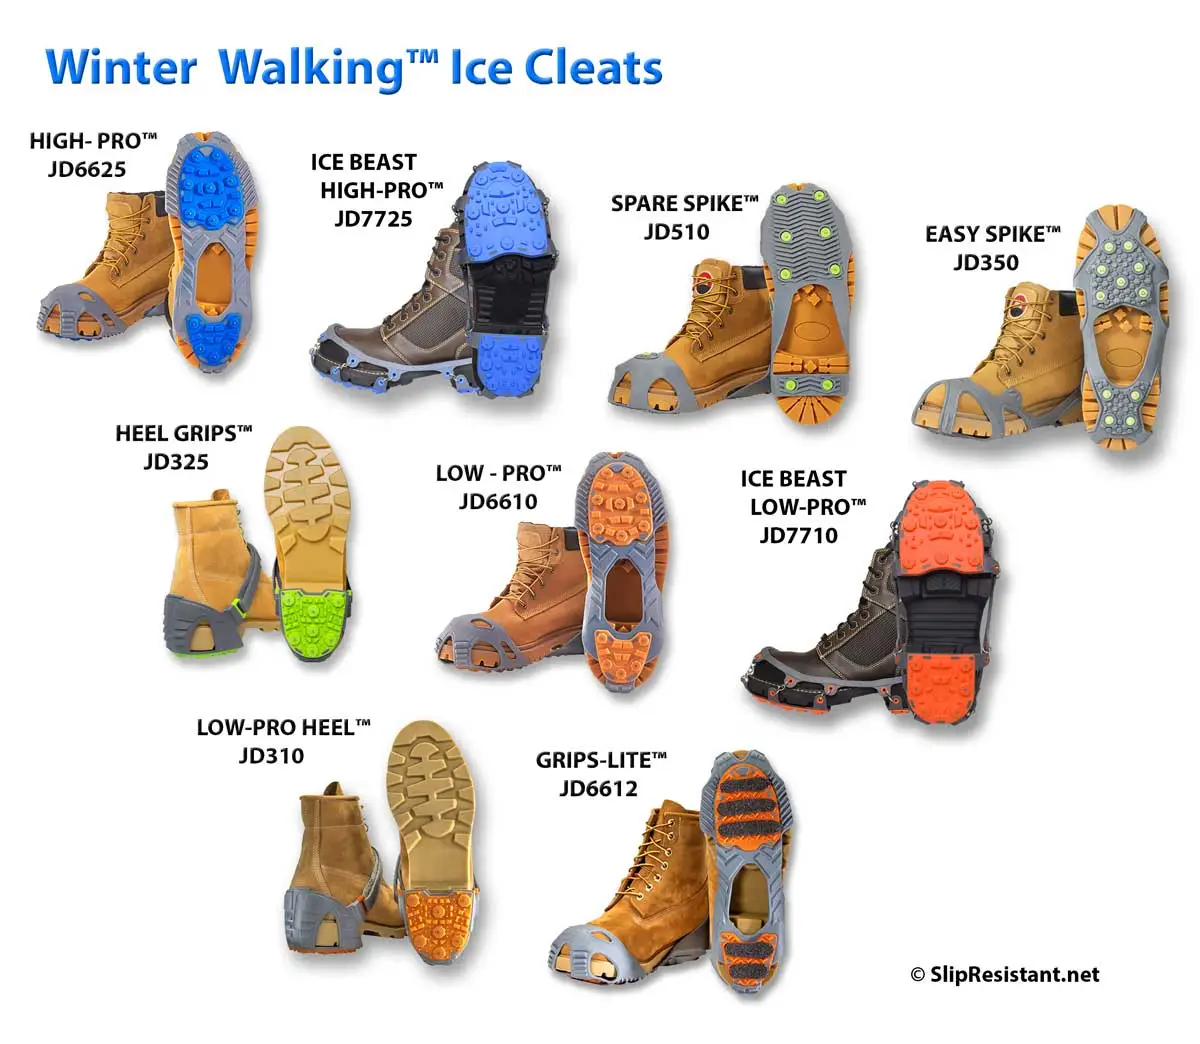 Winter Walking Ice Cleats